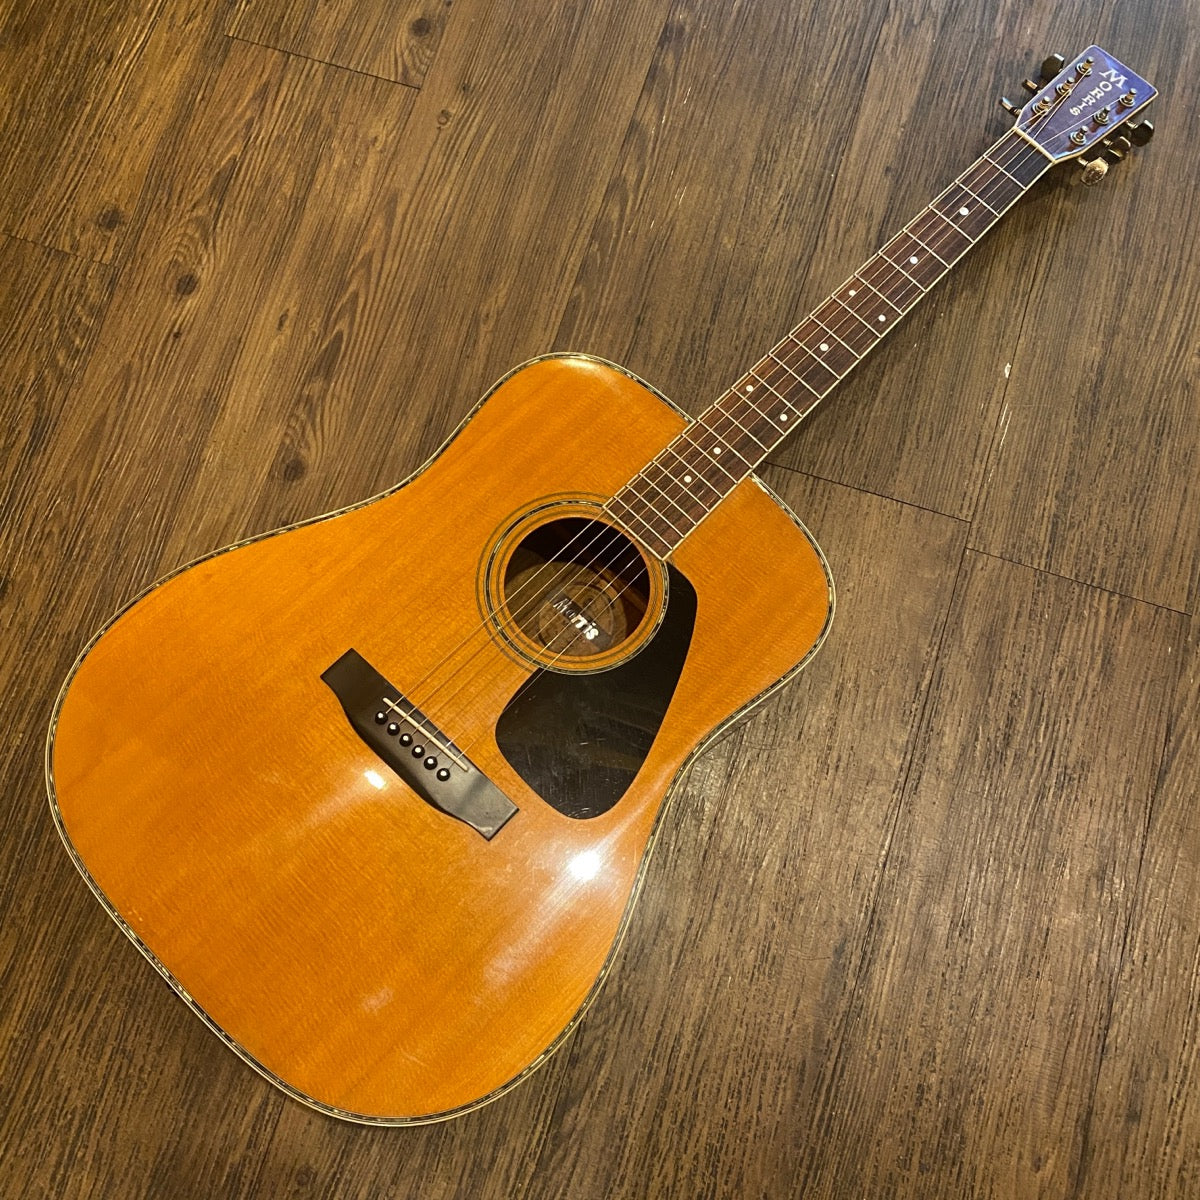 アコースティックギター モーリスMD-525縦ロゴ!トップ単板!美品